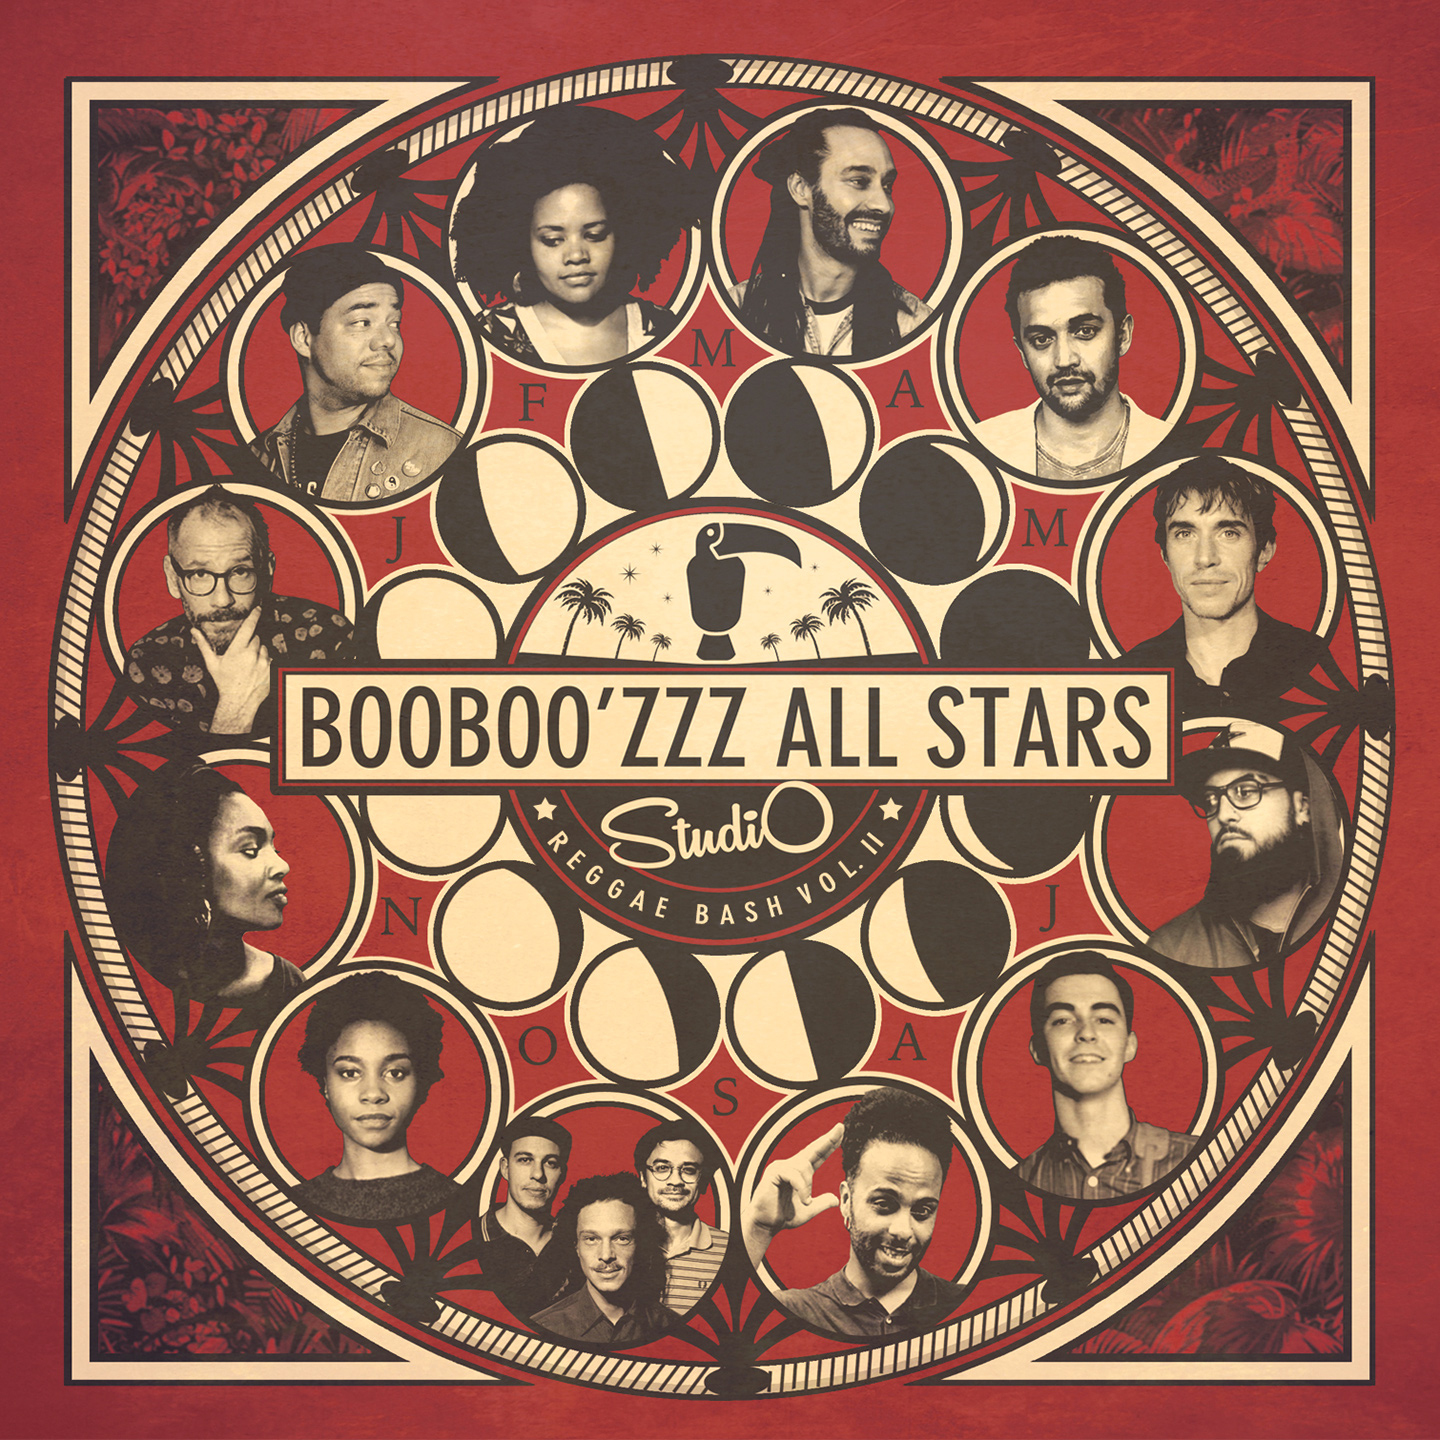 pochette-cover-artiste-Booboozzz All Stars-album-Studio Reggae Bash 2